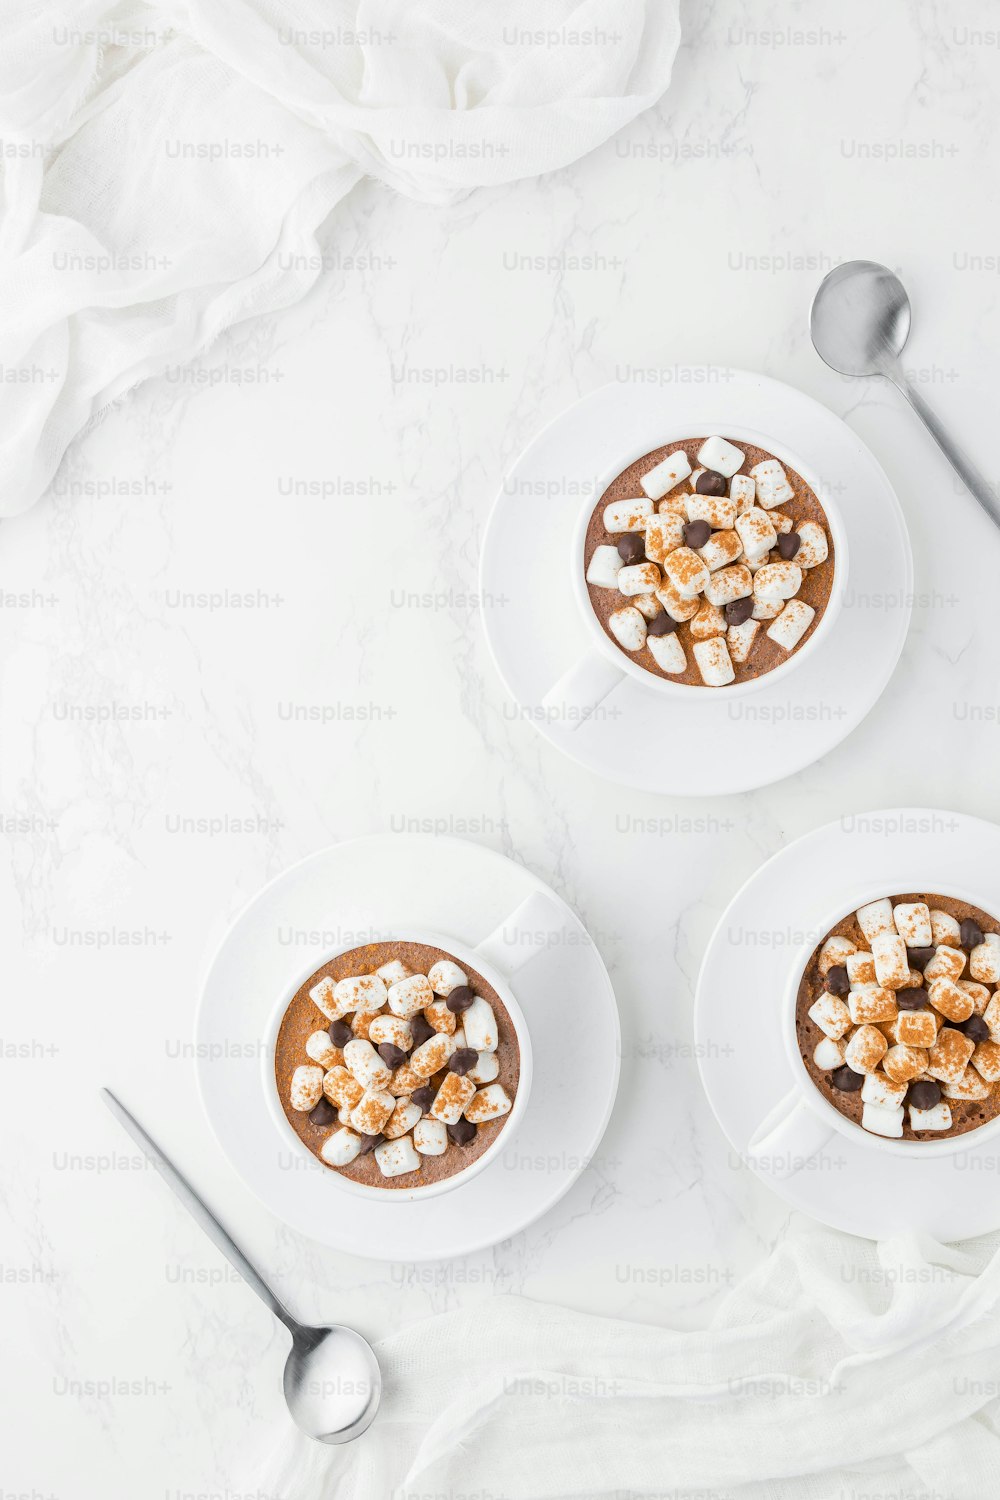 due tazze di cioccolata calda condita con marshmallow